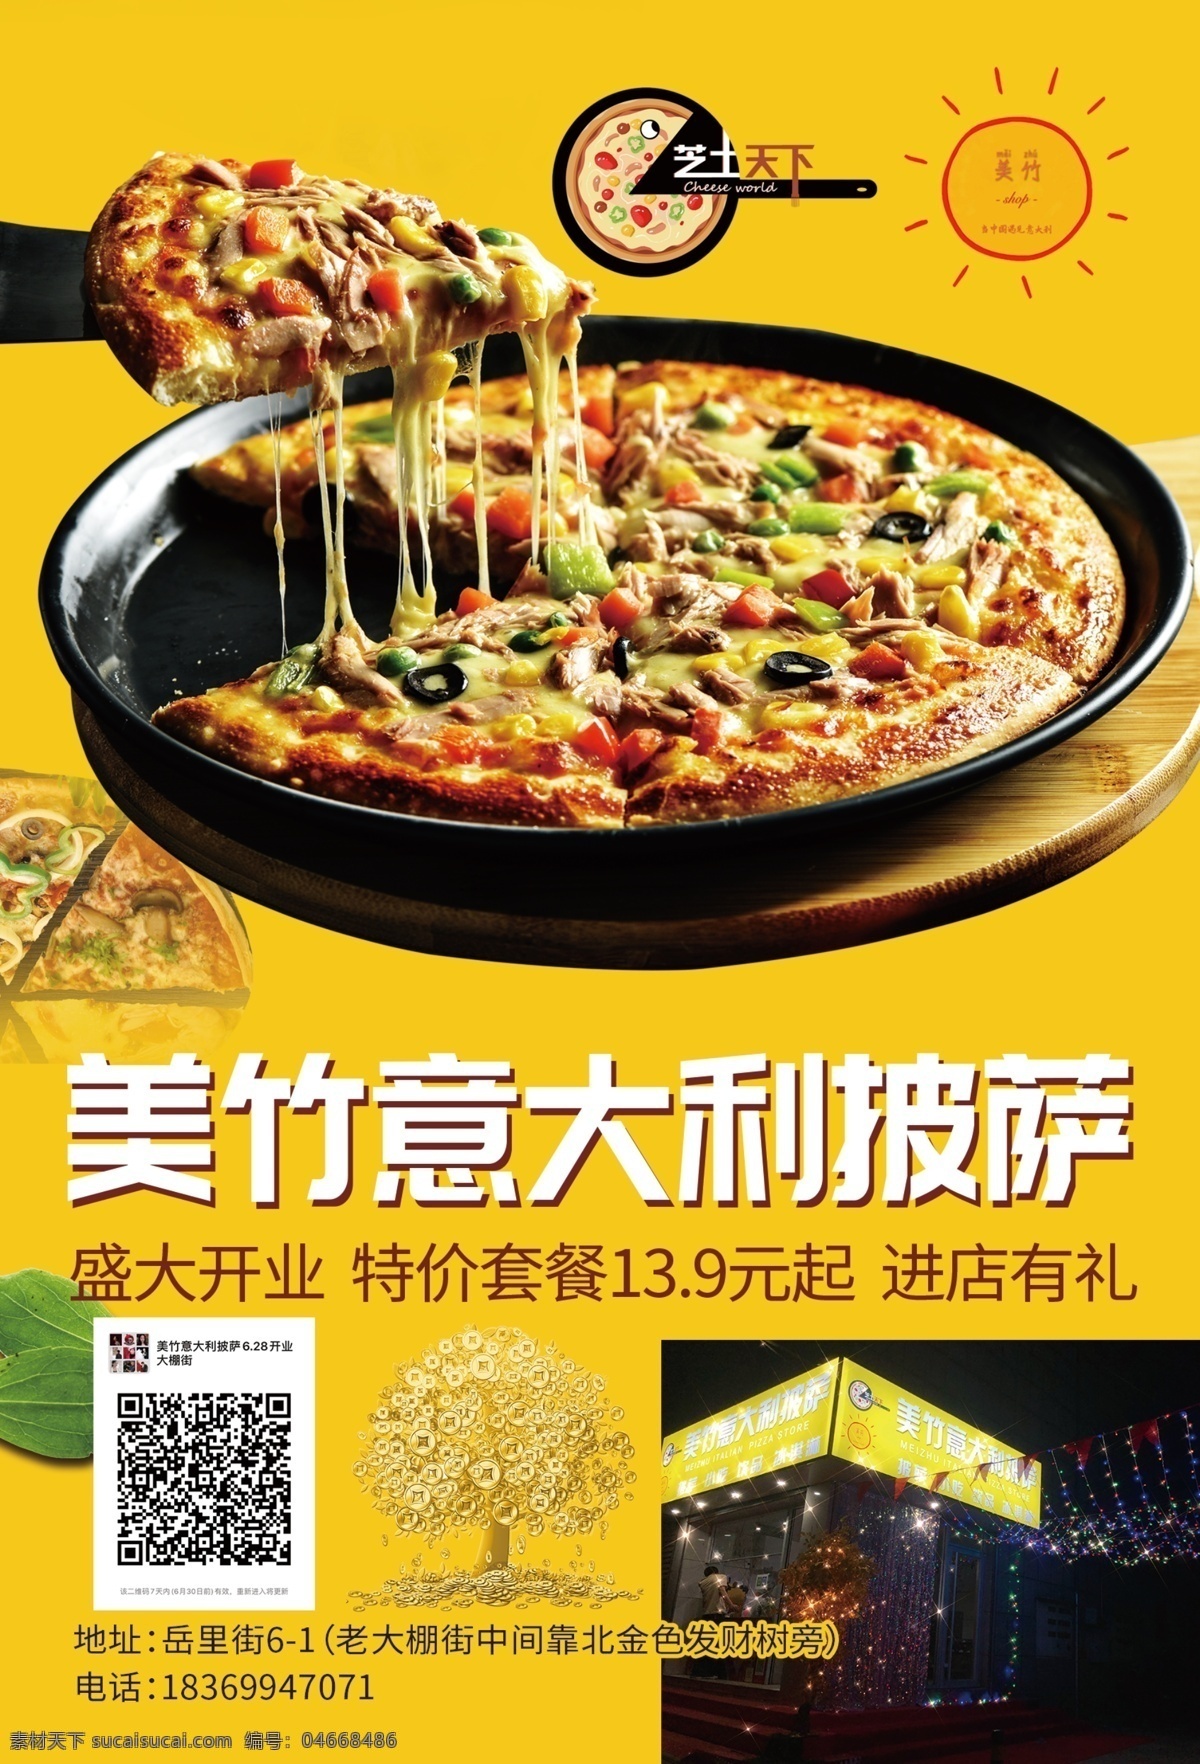 披萨宣传单 披萨 披萨宣传 披萨开业 意大利披萨 宣传单 dm宣传单